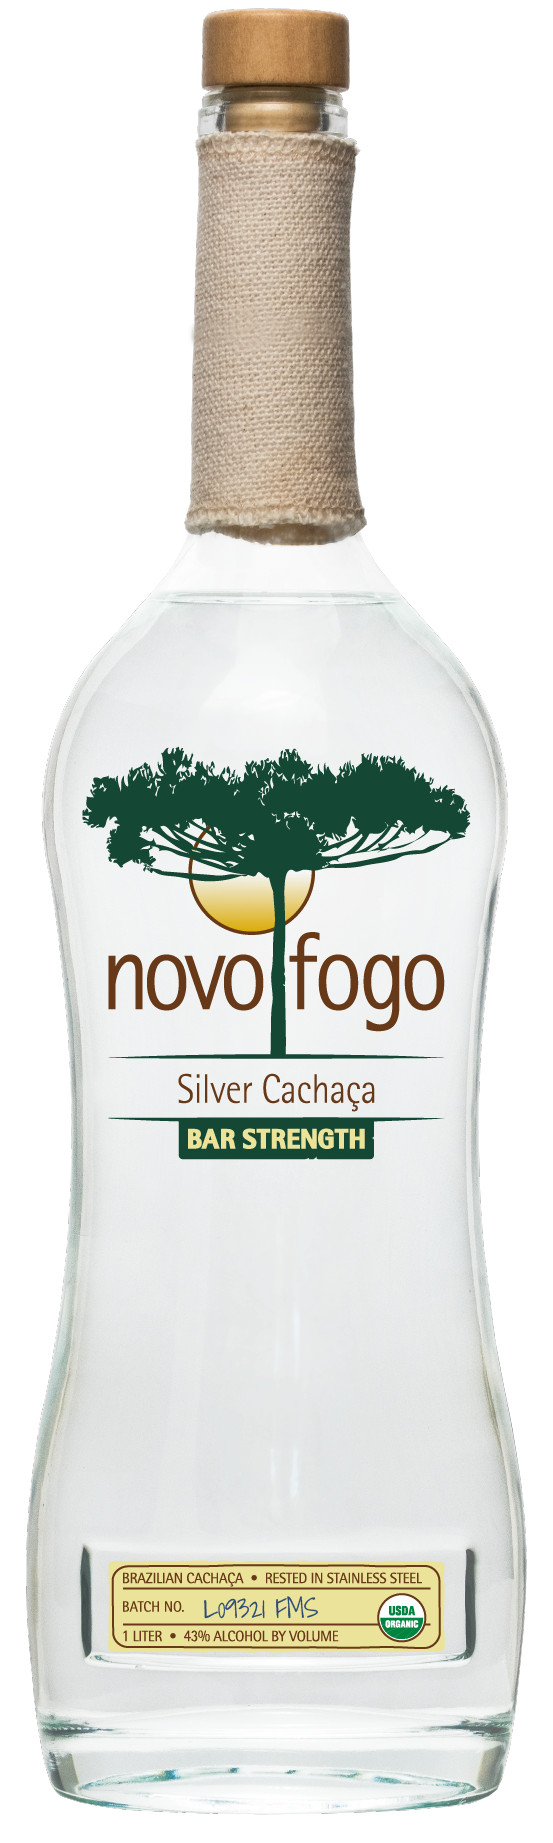 The novo fogo bar strength cachaca!